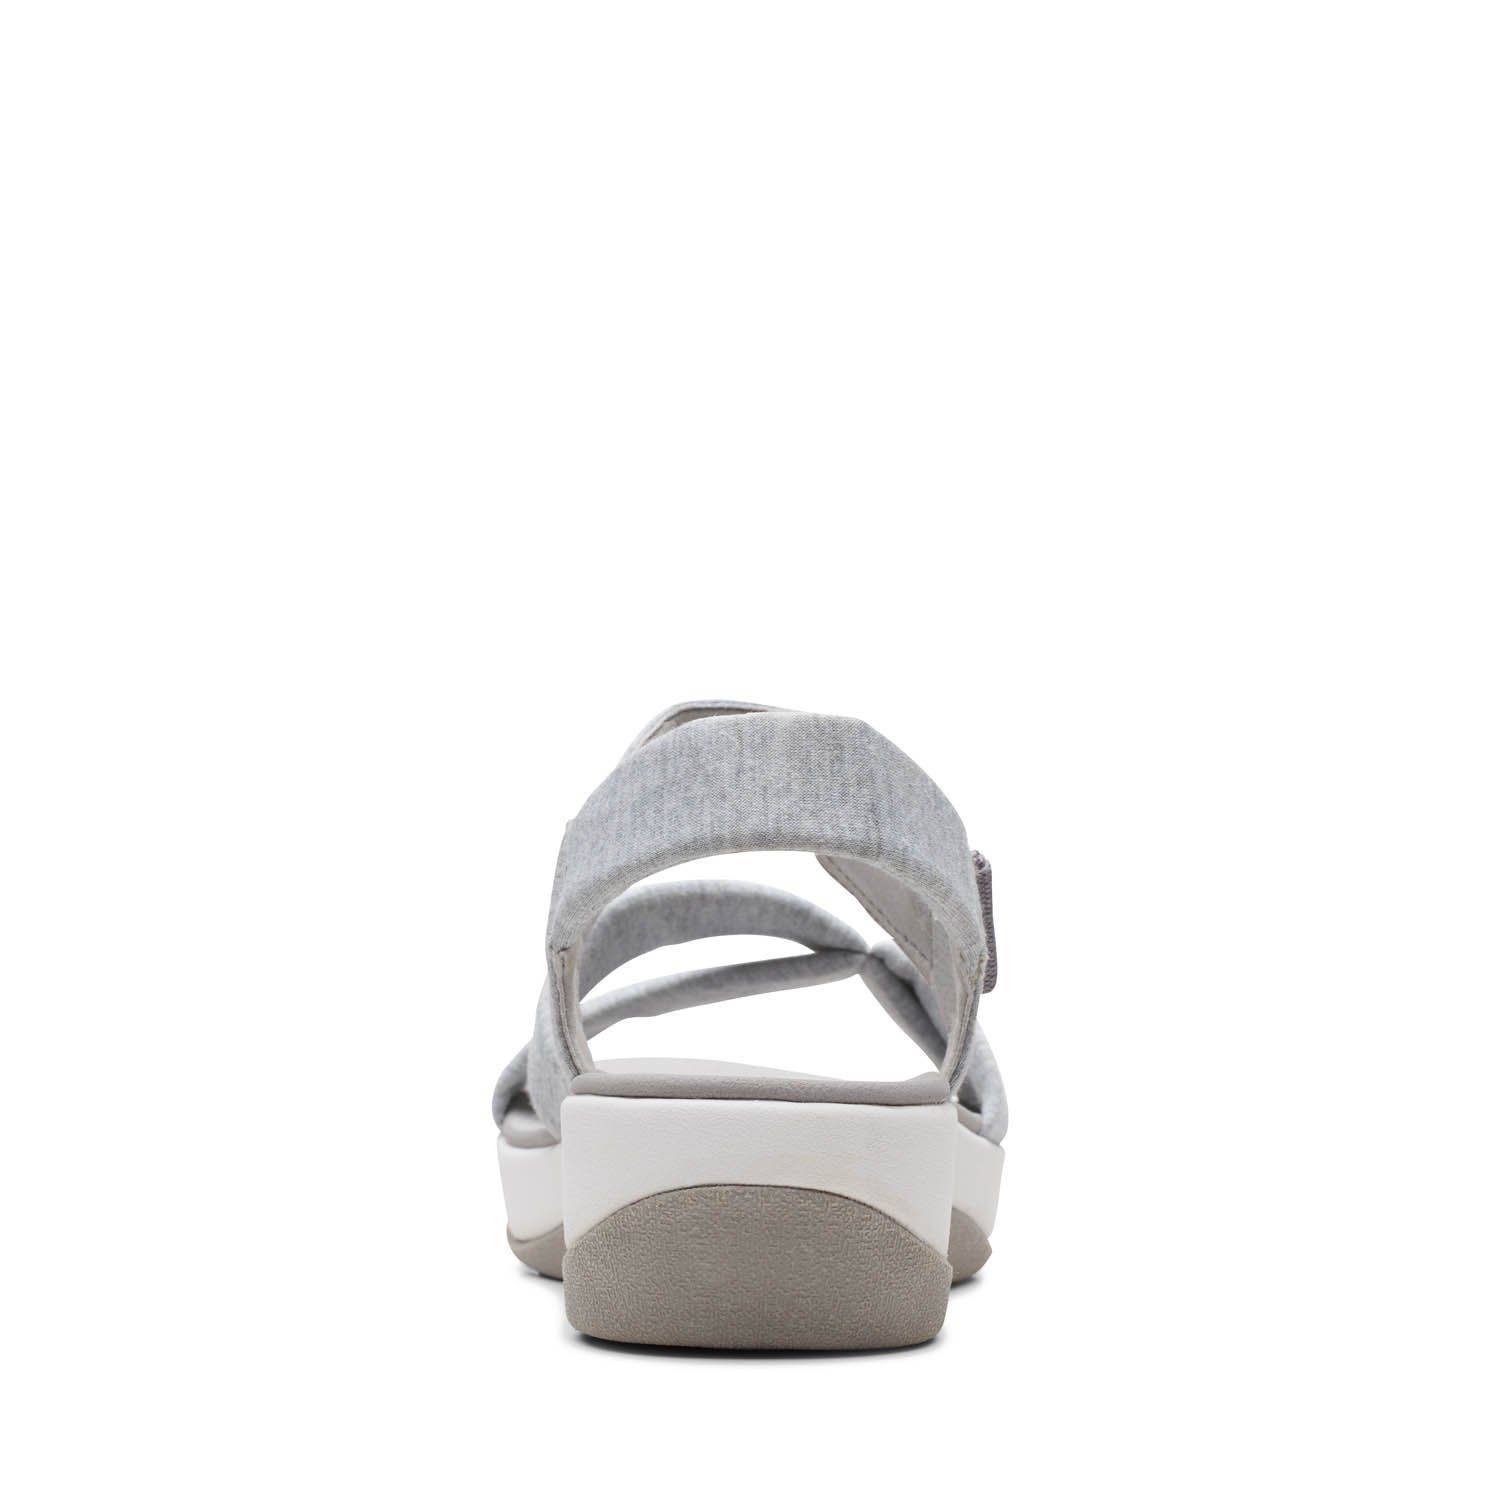 Женские сандалии Clarks (Arla Gracie 26159204), серые, цвет серый, размер 37 - фото 6